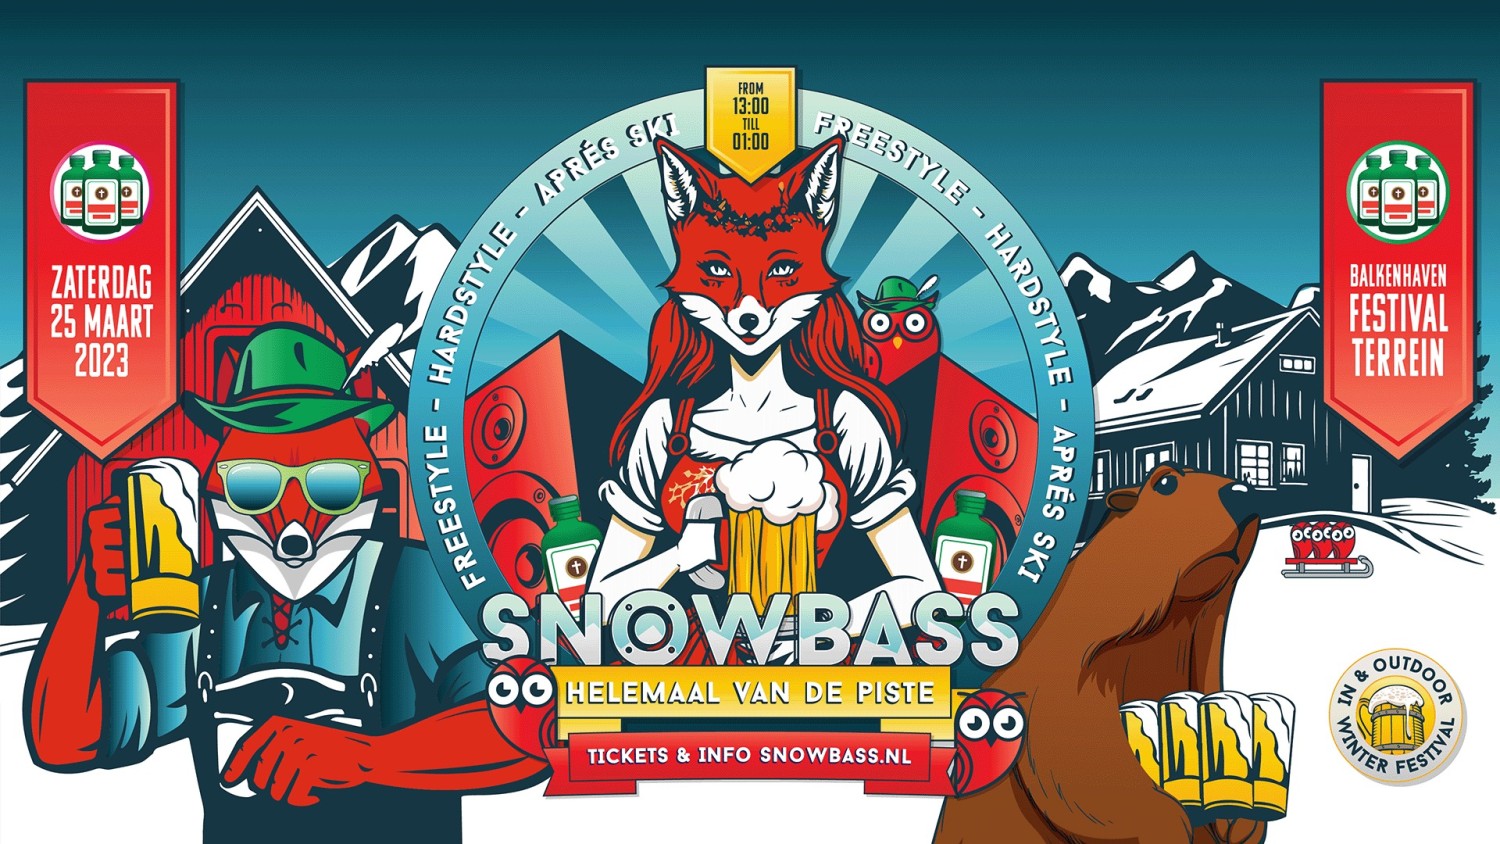 Party nieuws: Snowbass Festival is terug op 25 maart 2023